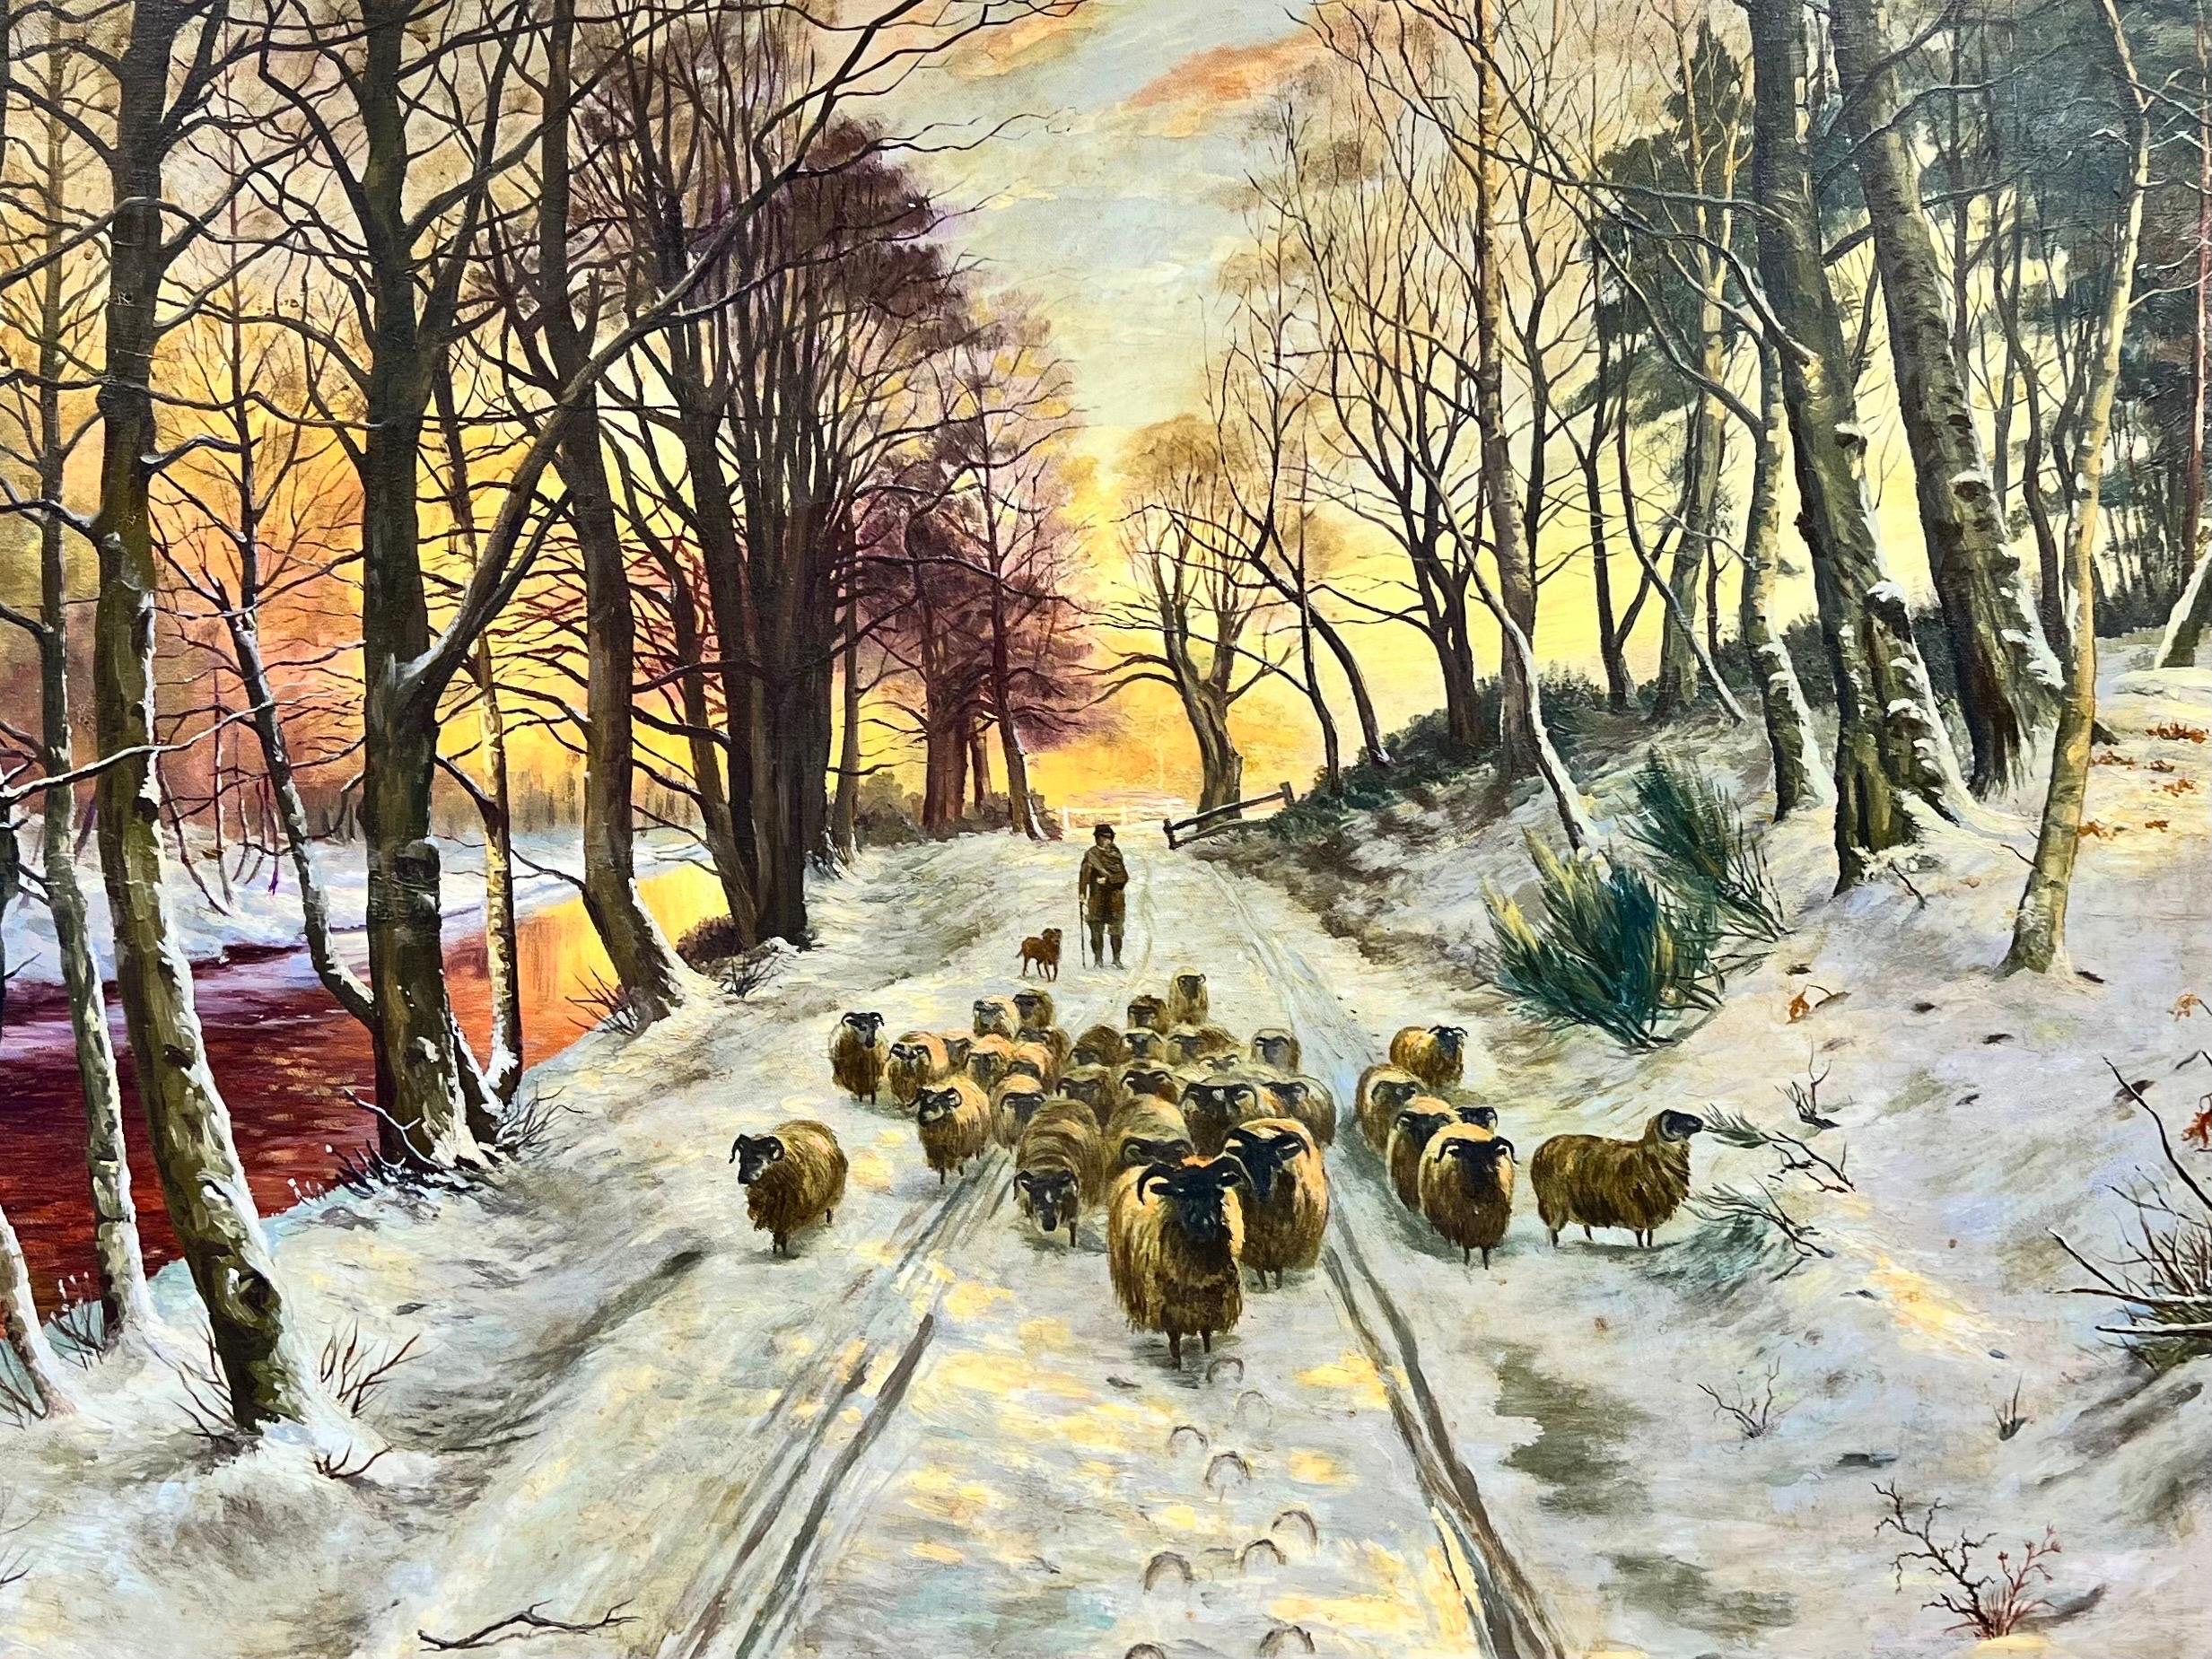 Landscape Painting Scottish School - Grande peinture écossaise signée de moutons dans un paysage de coucher de soleil en hiver